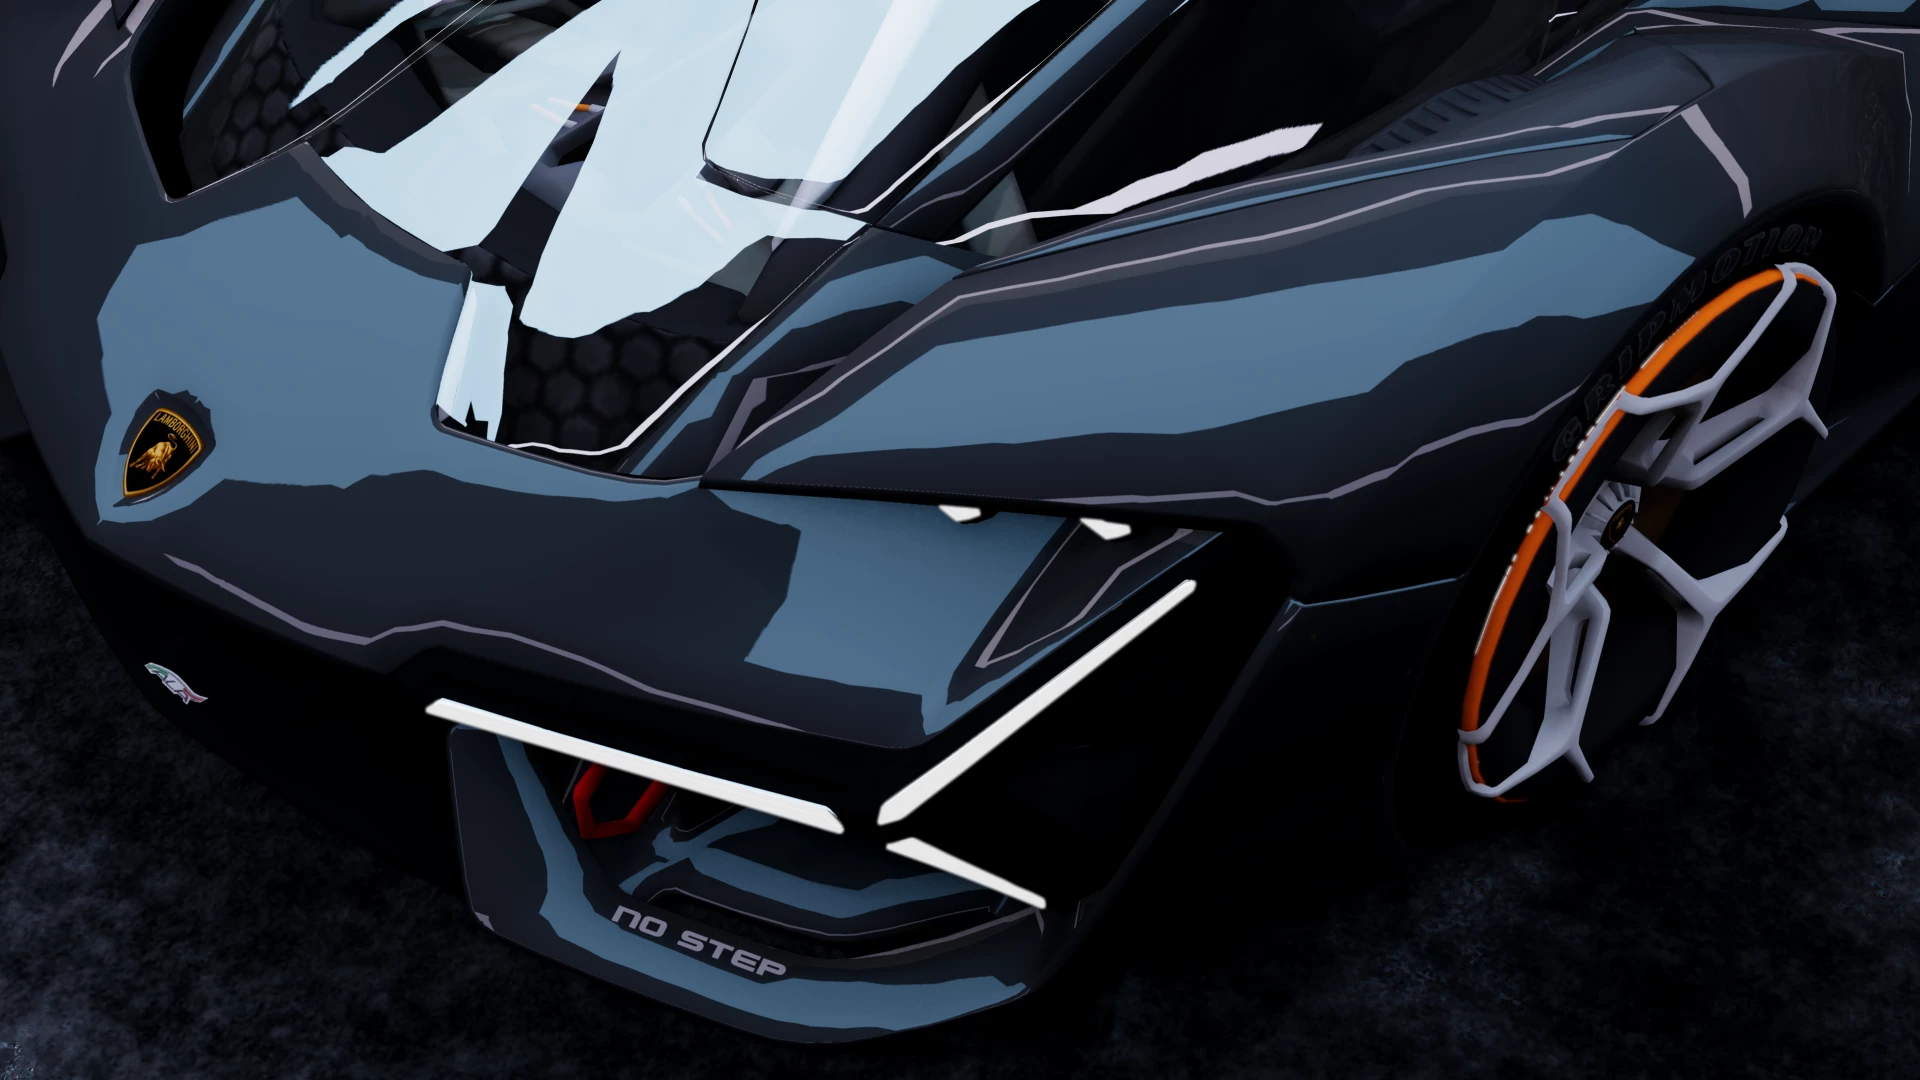 Download Lamborghini Terzo Millennio for GTA 5